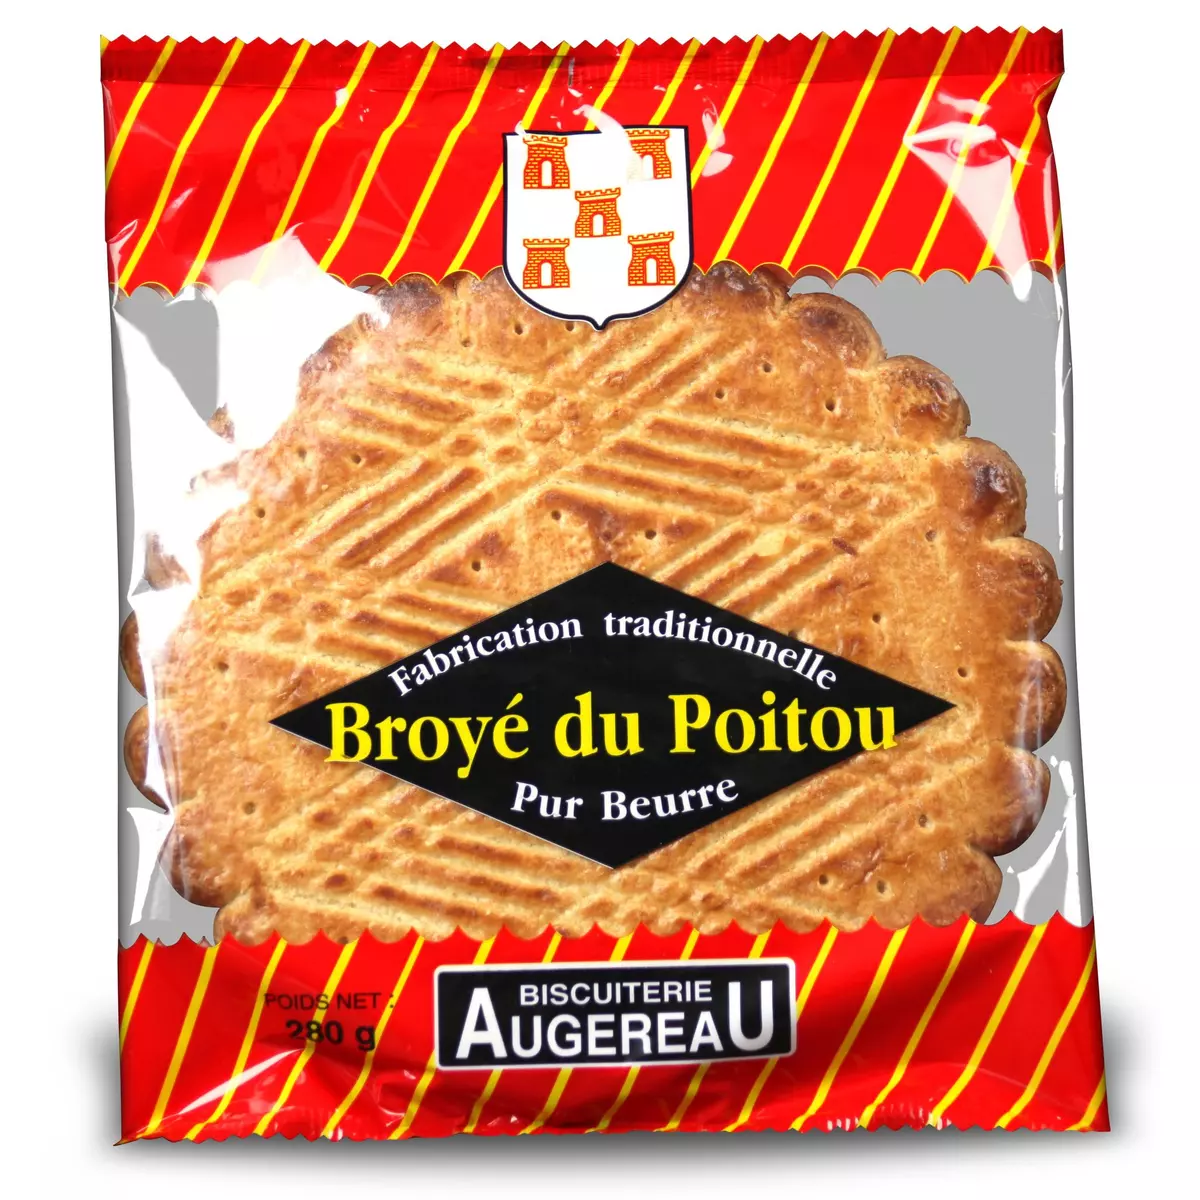 BISCUITERIE AUGEREAU Broyé du Poitou pur beurre 280g